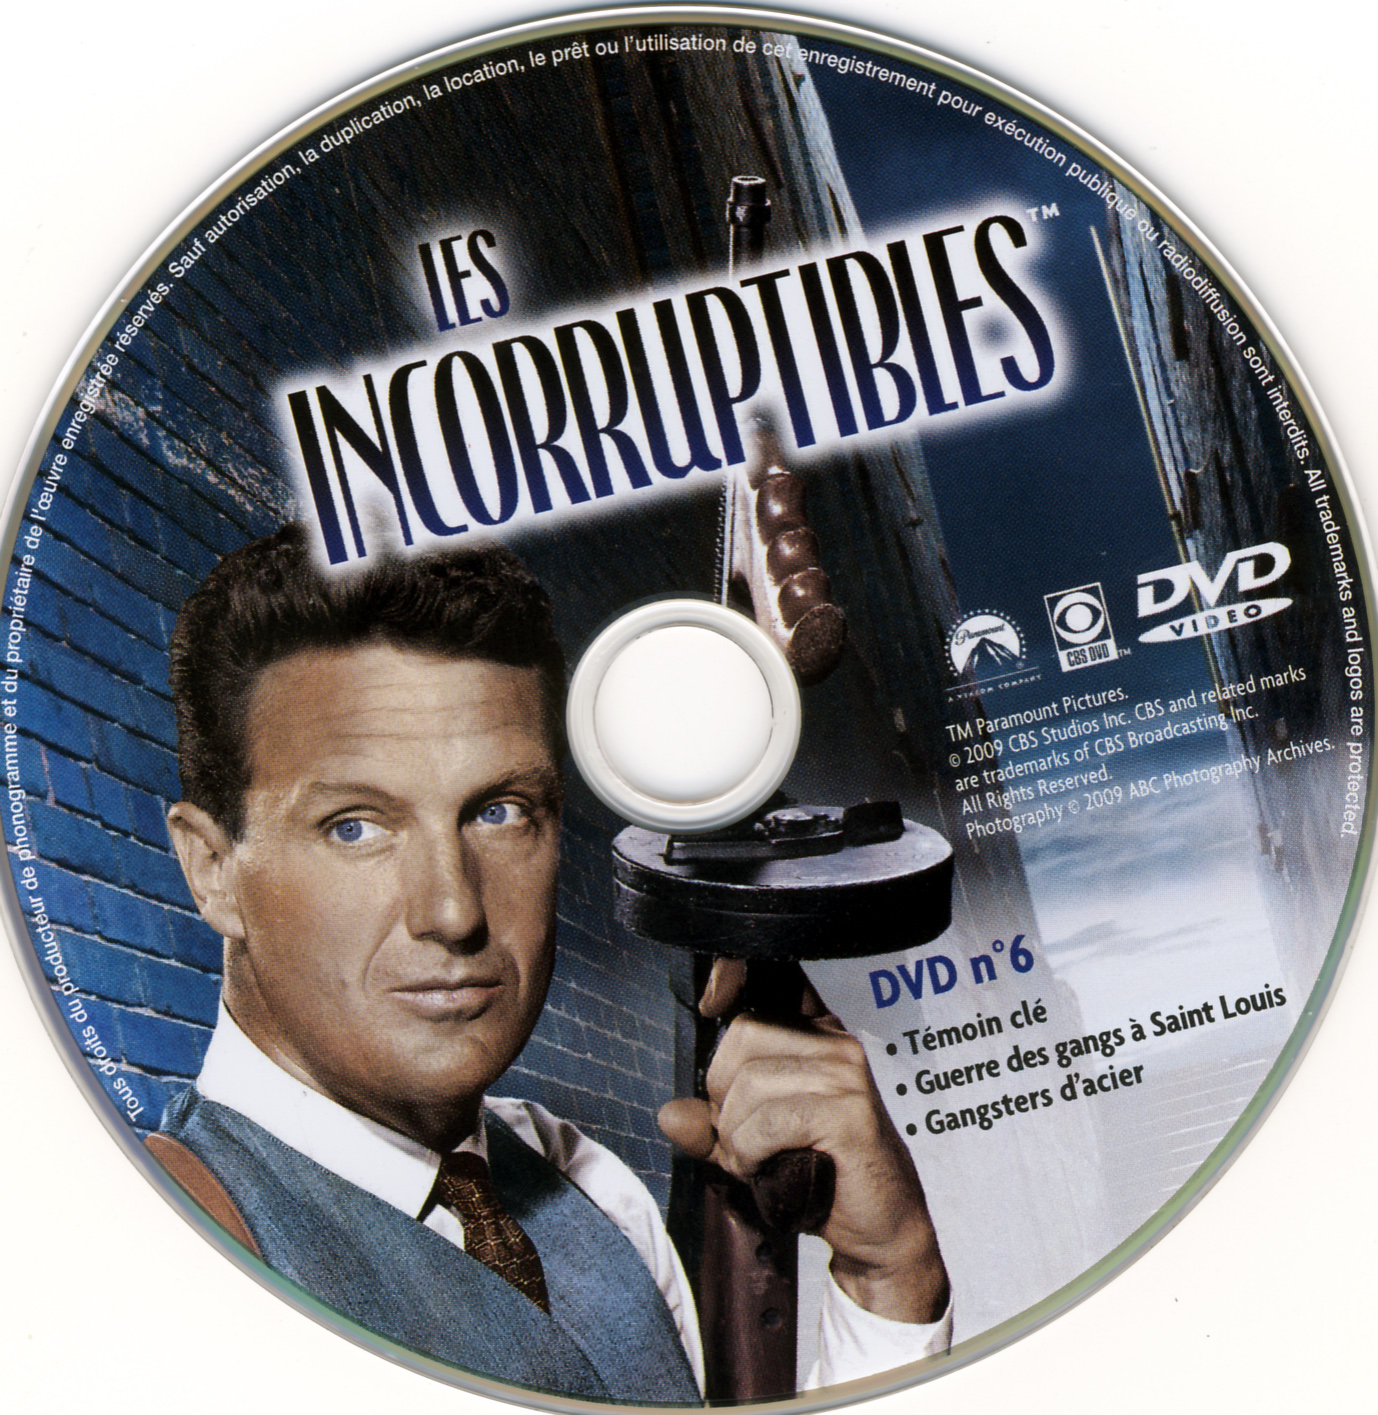 Les incorruptibles intgrale DVD 06